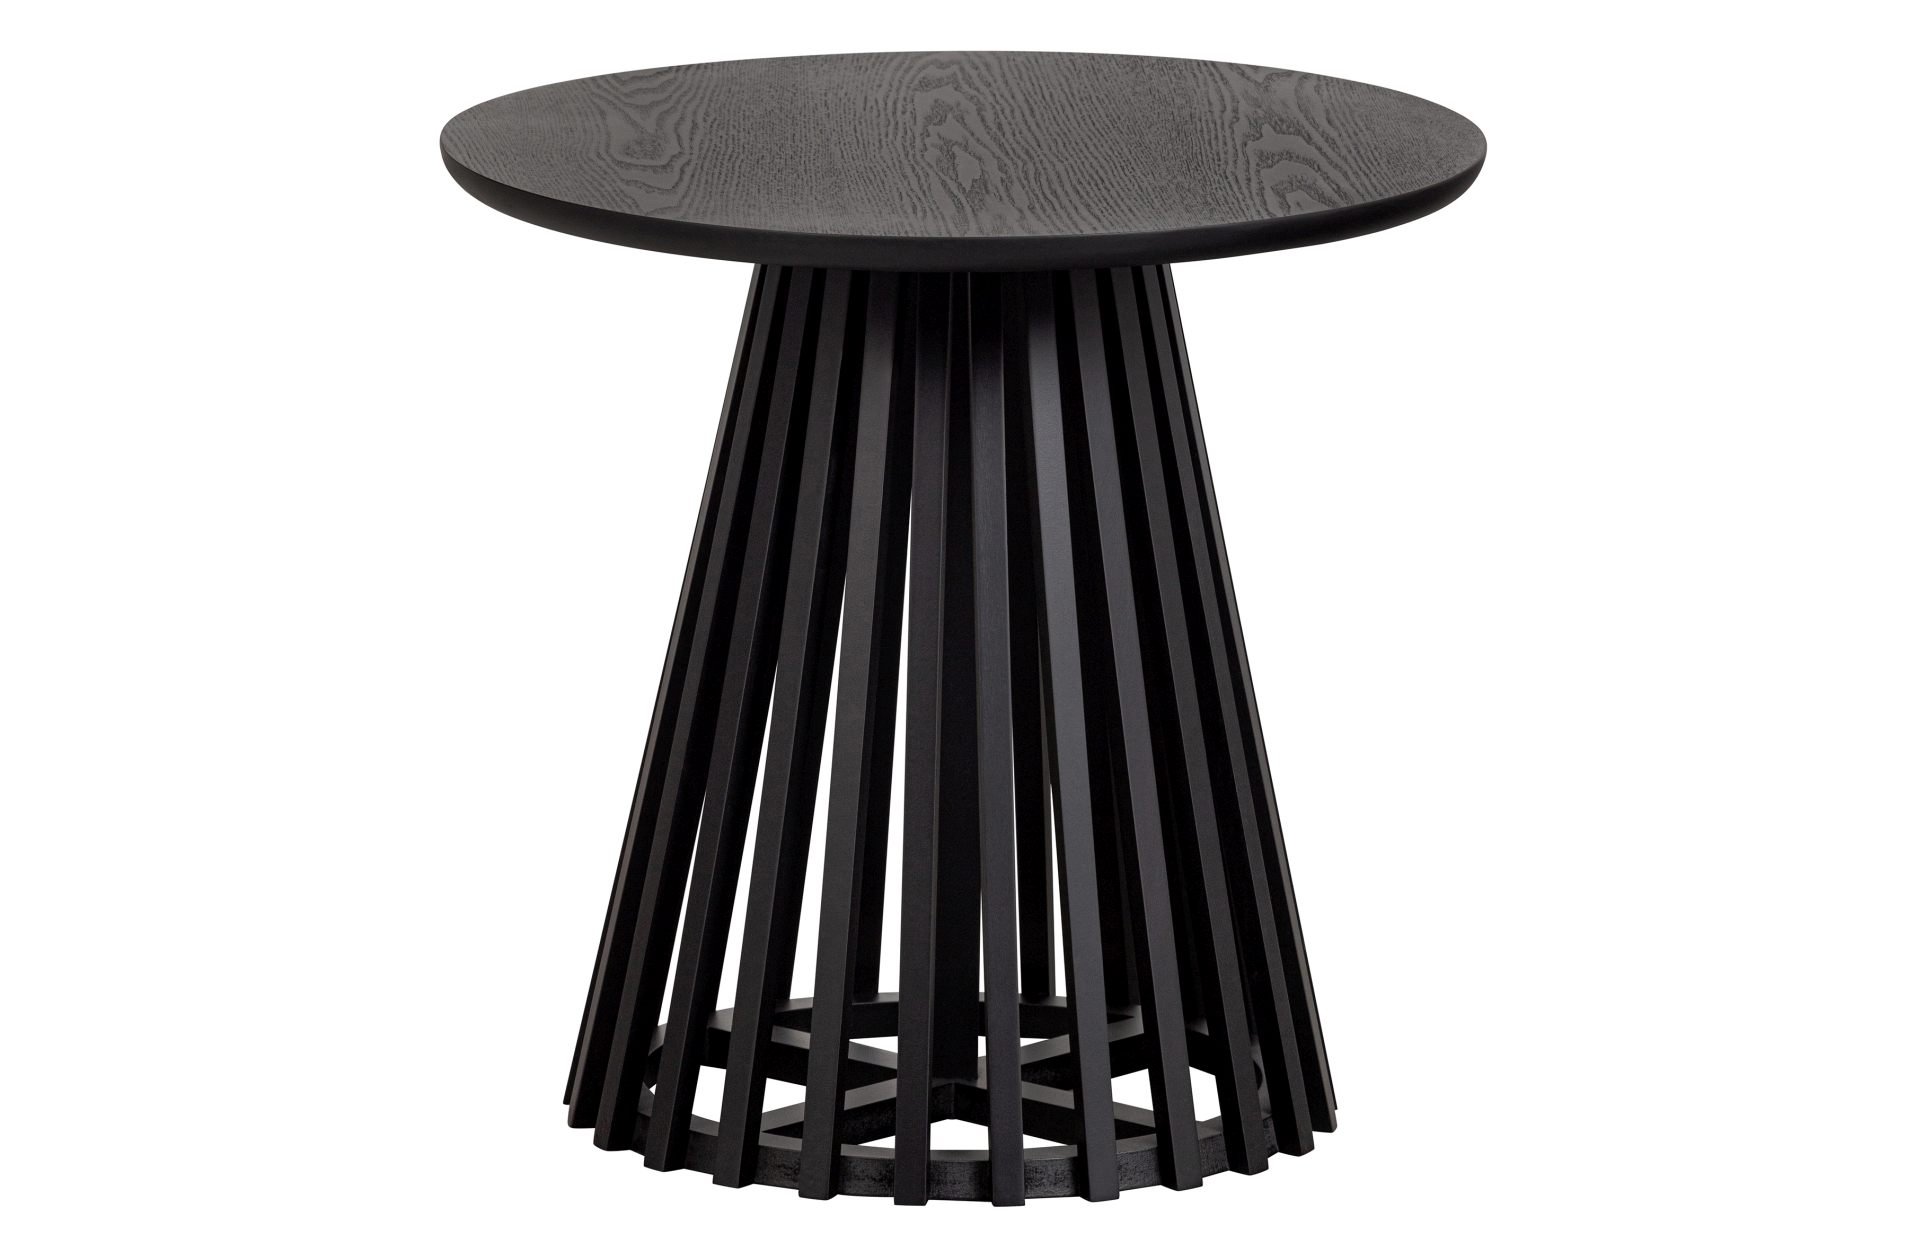 Der Beistelltisch Slats High überzeugt mit seinem modernen aber auch schlichtem Design. Gefertigt wurde der Tisch aus Kiefernholz, welches einen schwarzen Farbton besitzt.